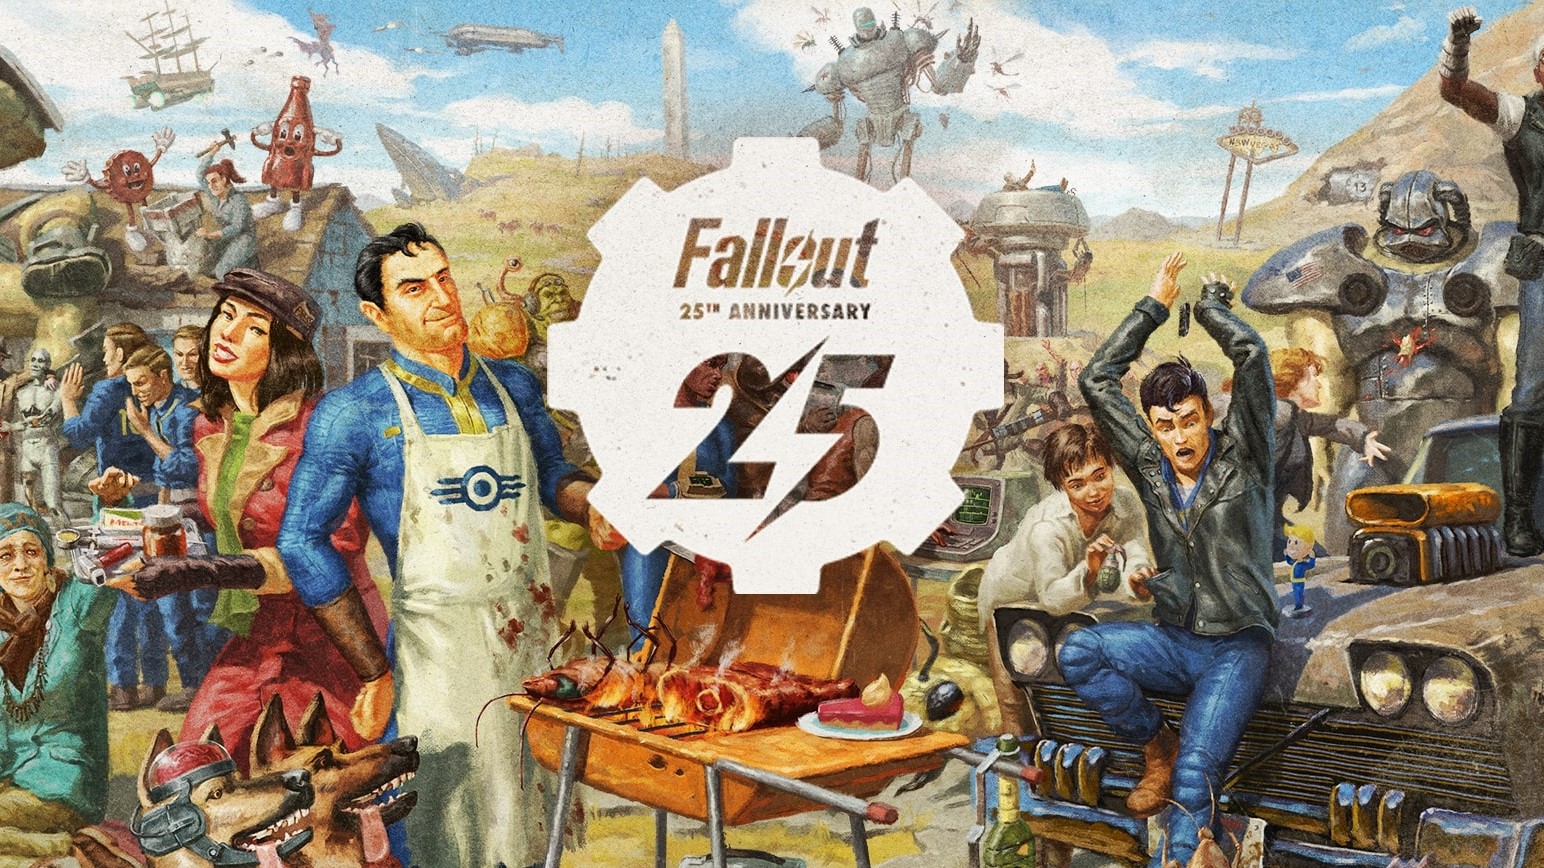 Fallout : La licence fête ses 25 ans avec des promotions et une semaine gratuite sur Fallout 76